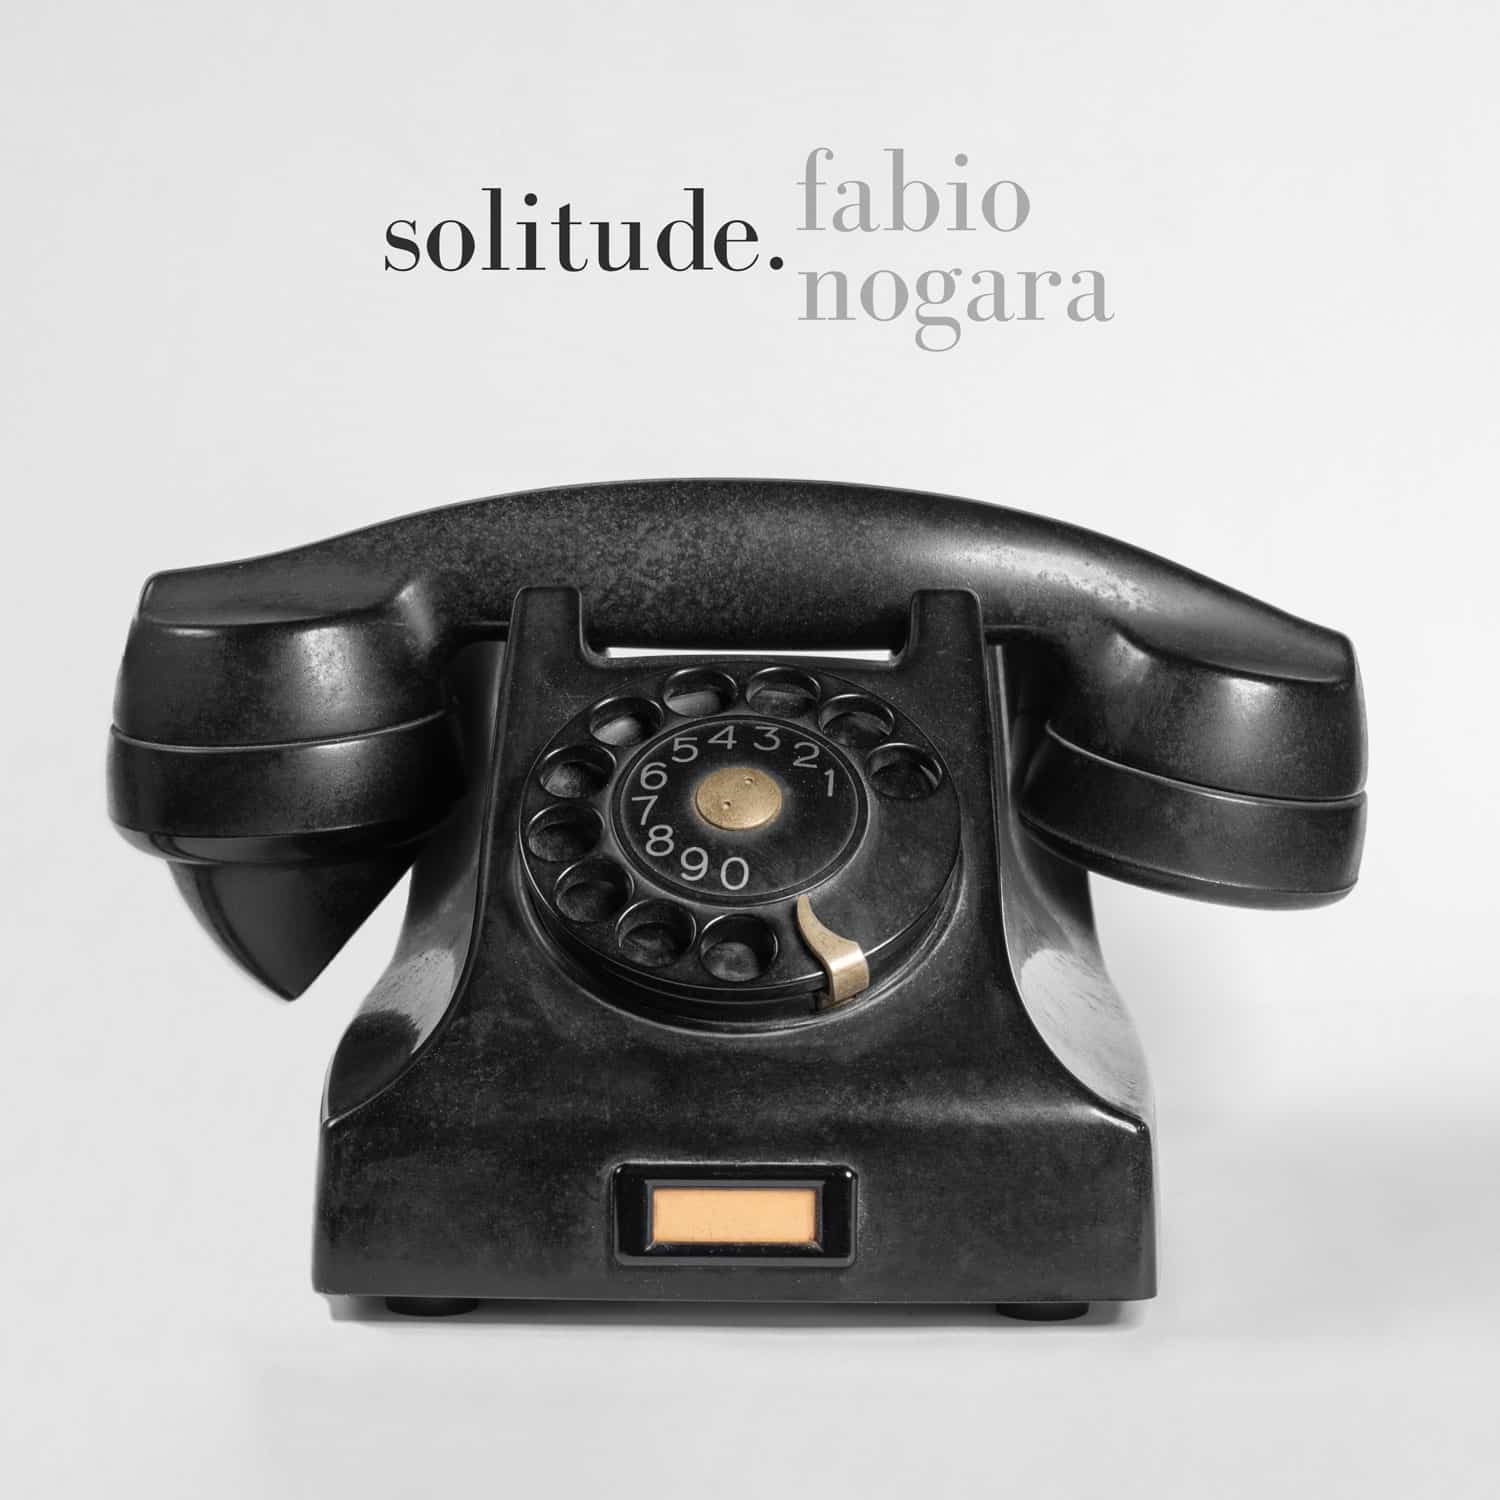 revistaprosaversoearte.com - Fabio Nogara lança ‘Solitude’, seu segundo EP